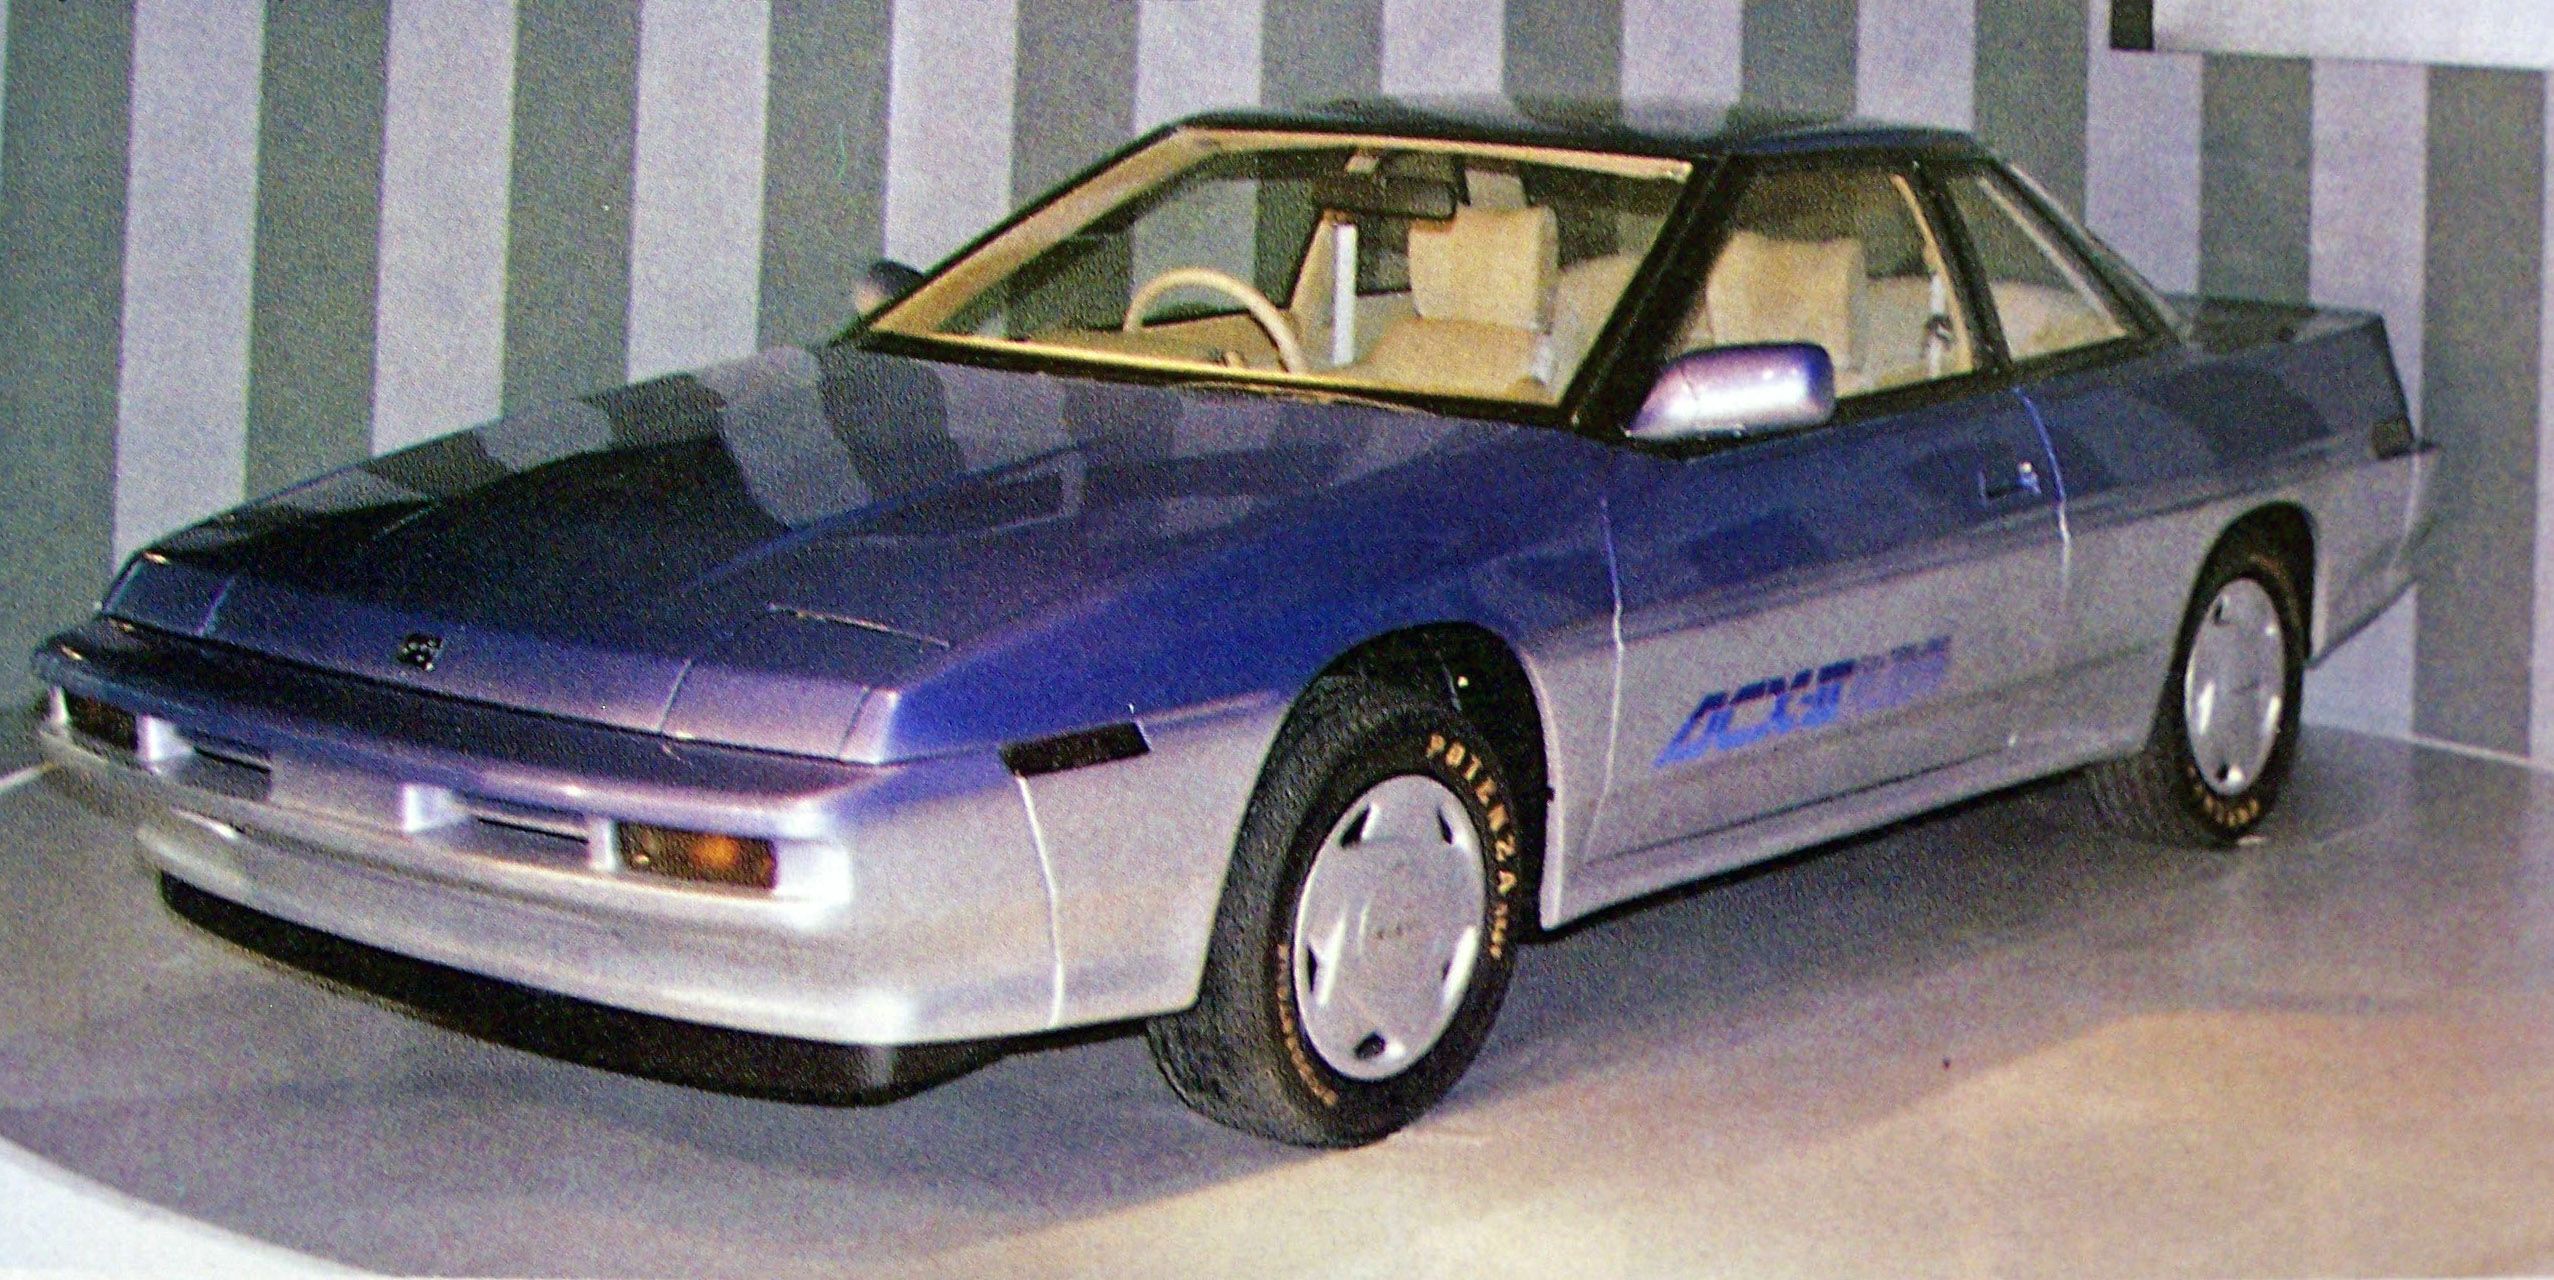 Original Subaru XT Subaru ACX-II concept 1985